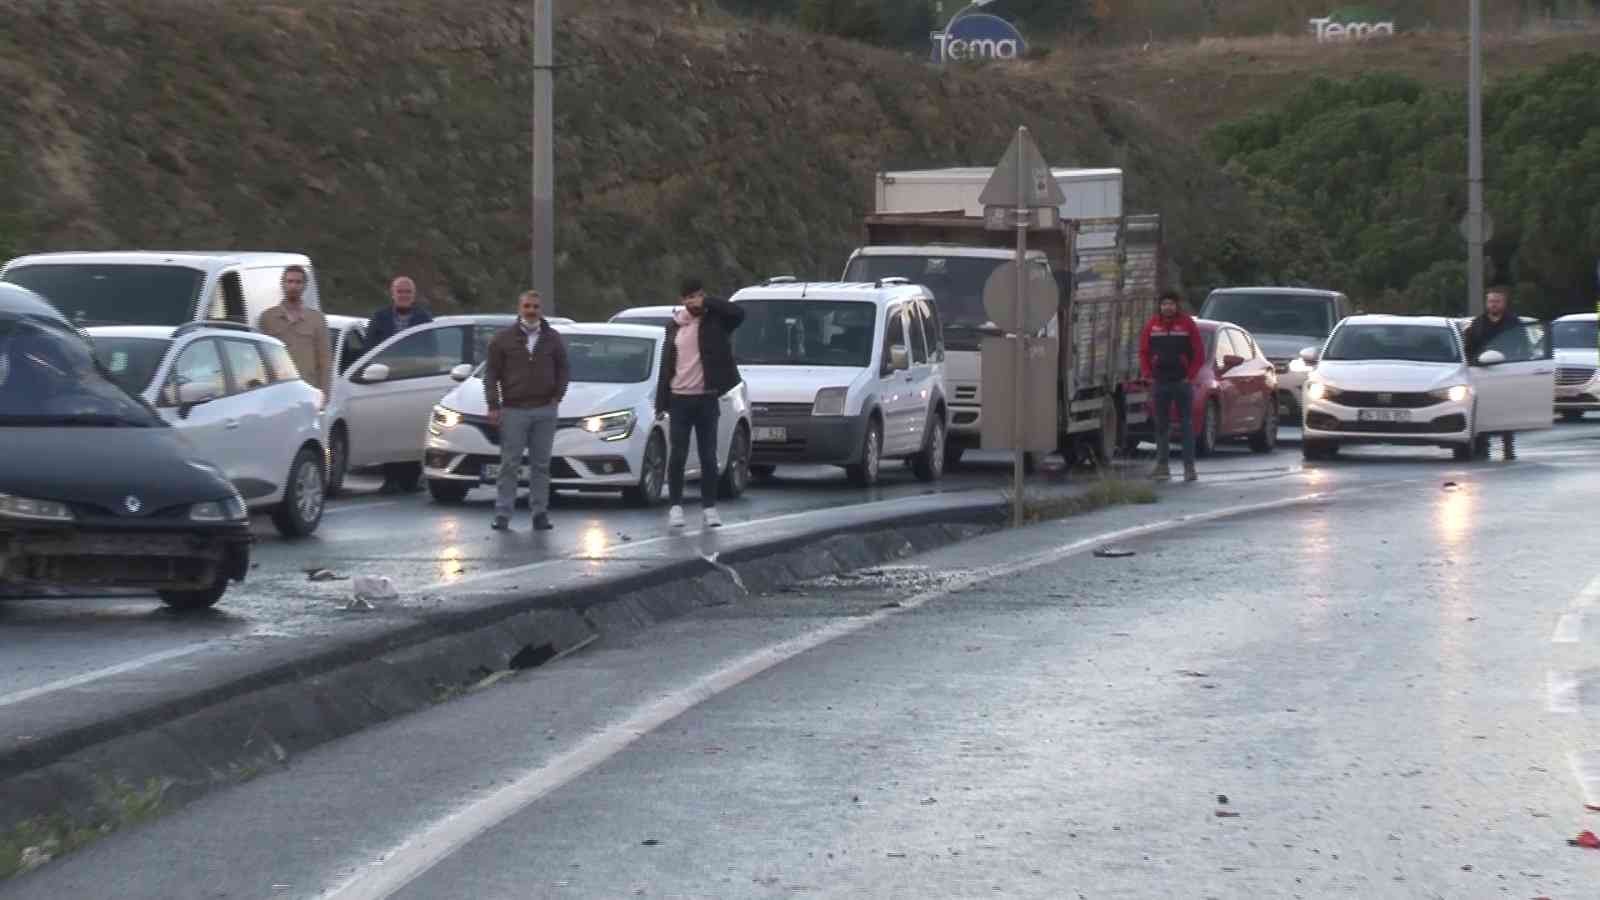 Kaza yapan araçlarının başında saygı duruşunda bulundular #istanbul